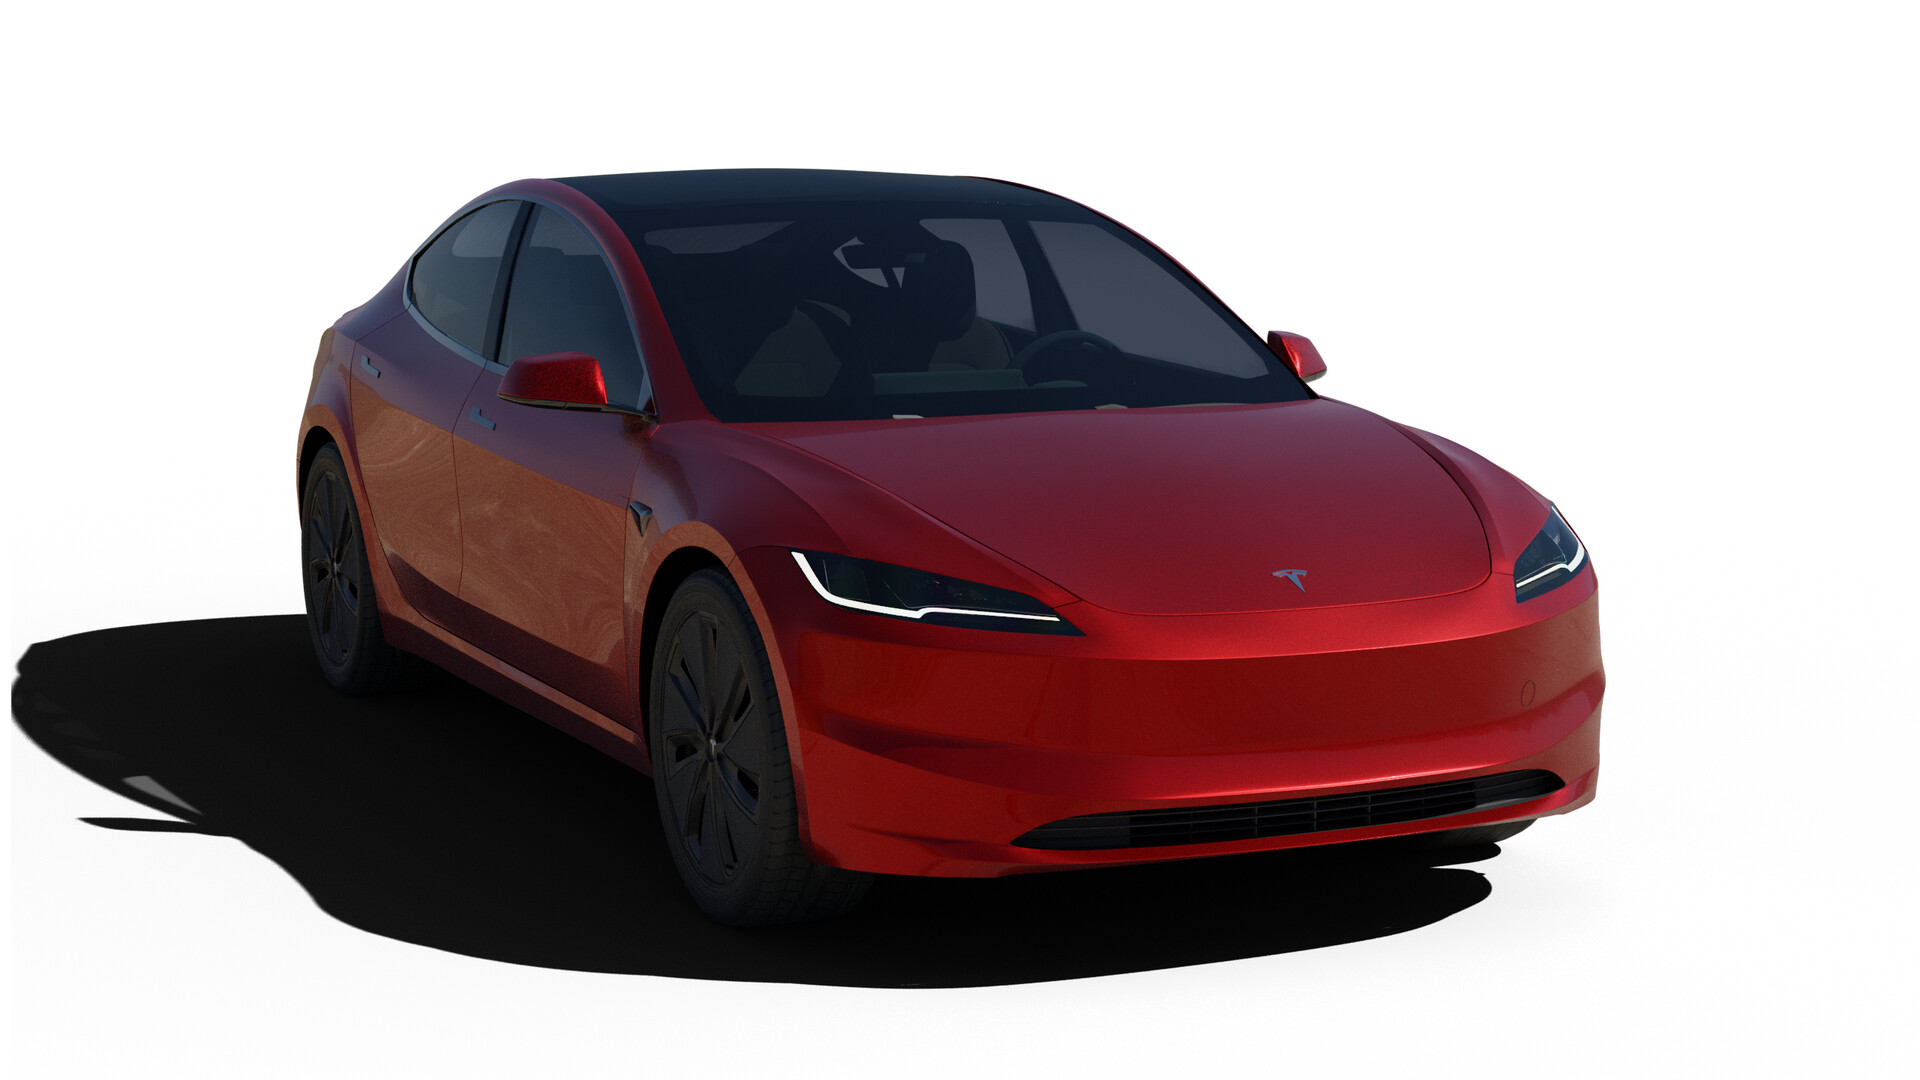 2024 Tesla Model Y Digitally Borrows Model 3 'Highland' Design